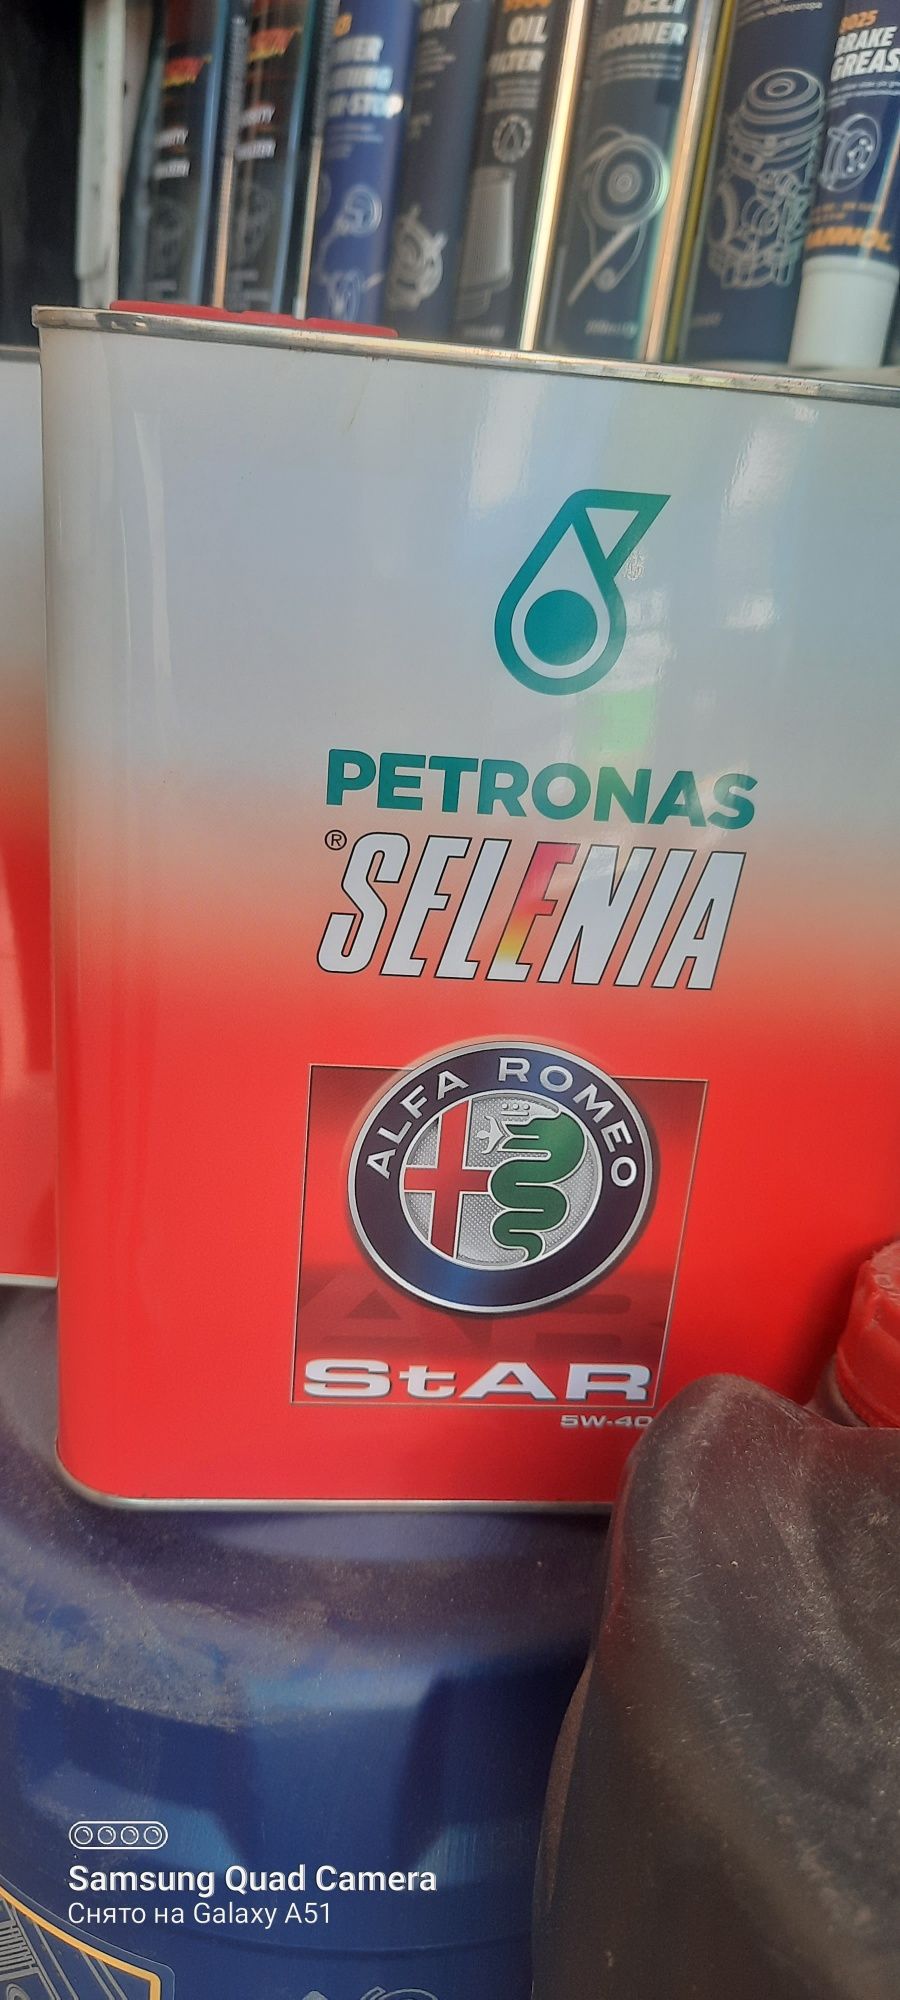 Petronas Selenia Star 5w40